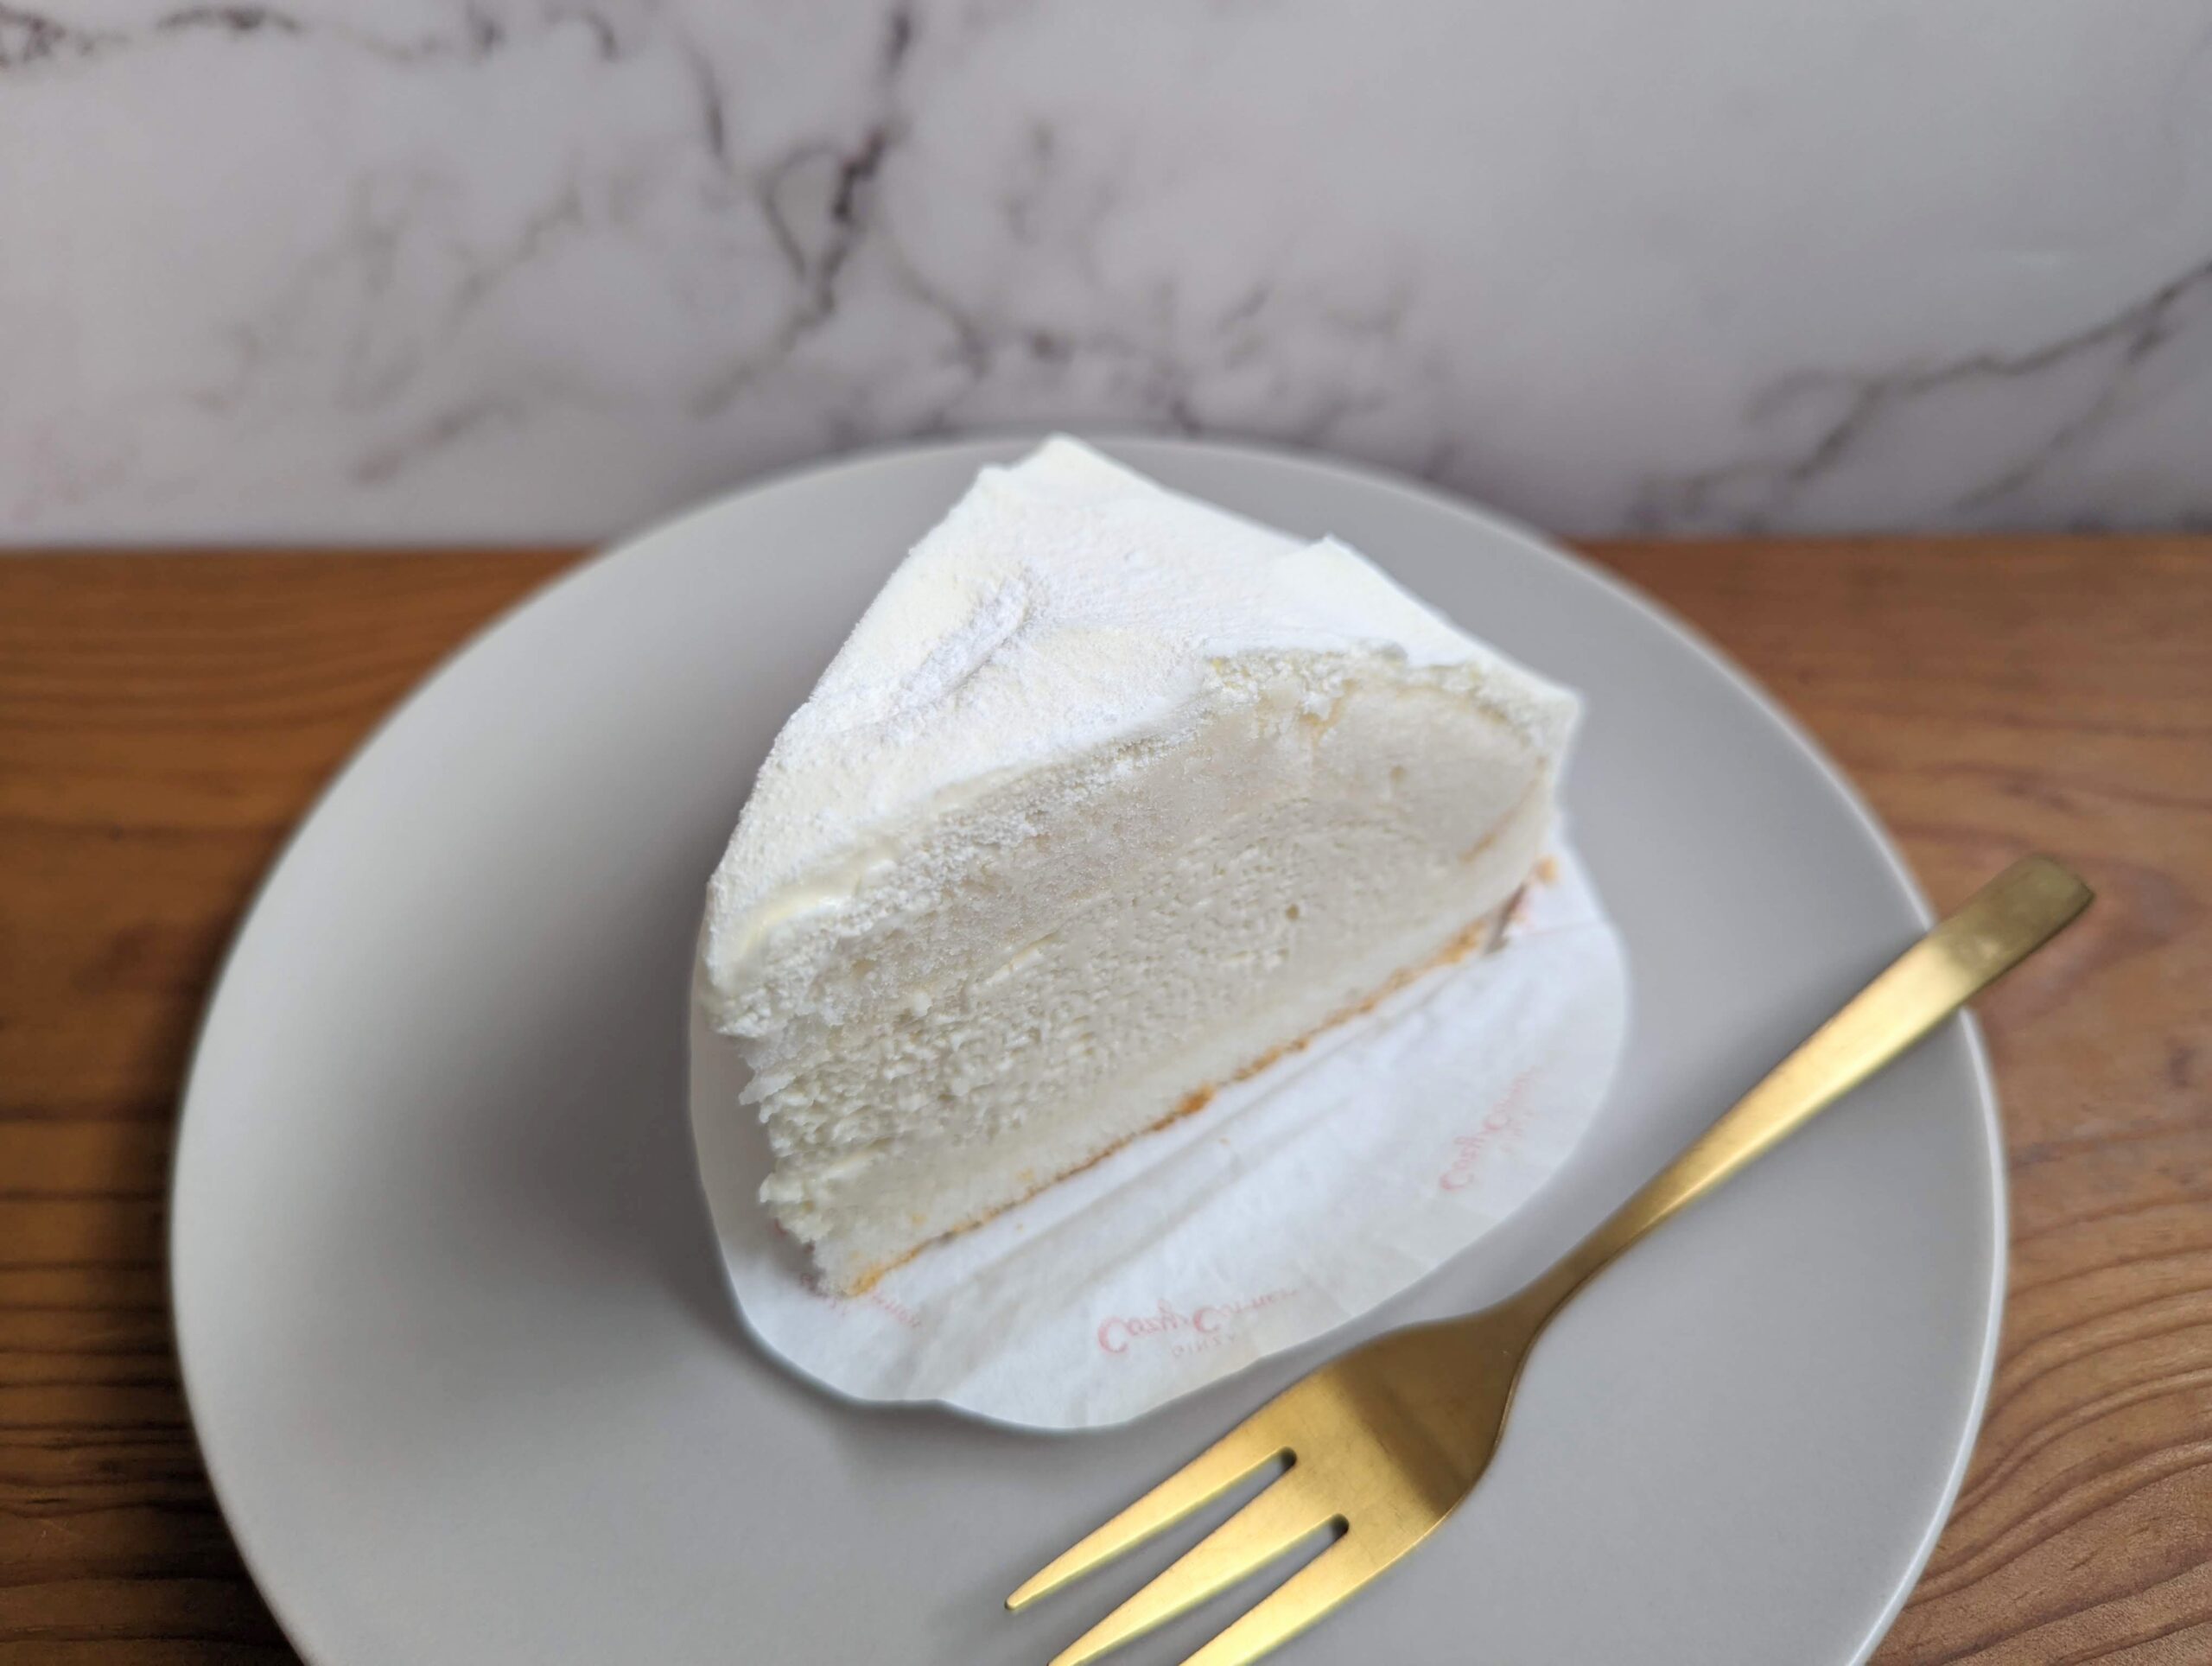 銀座コージーコーナーの「北海道産5種のチーズを使ったこだわりレアチーズ」の写真 (3)